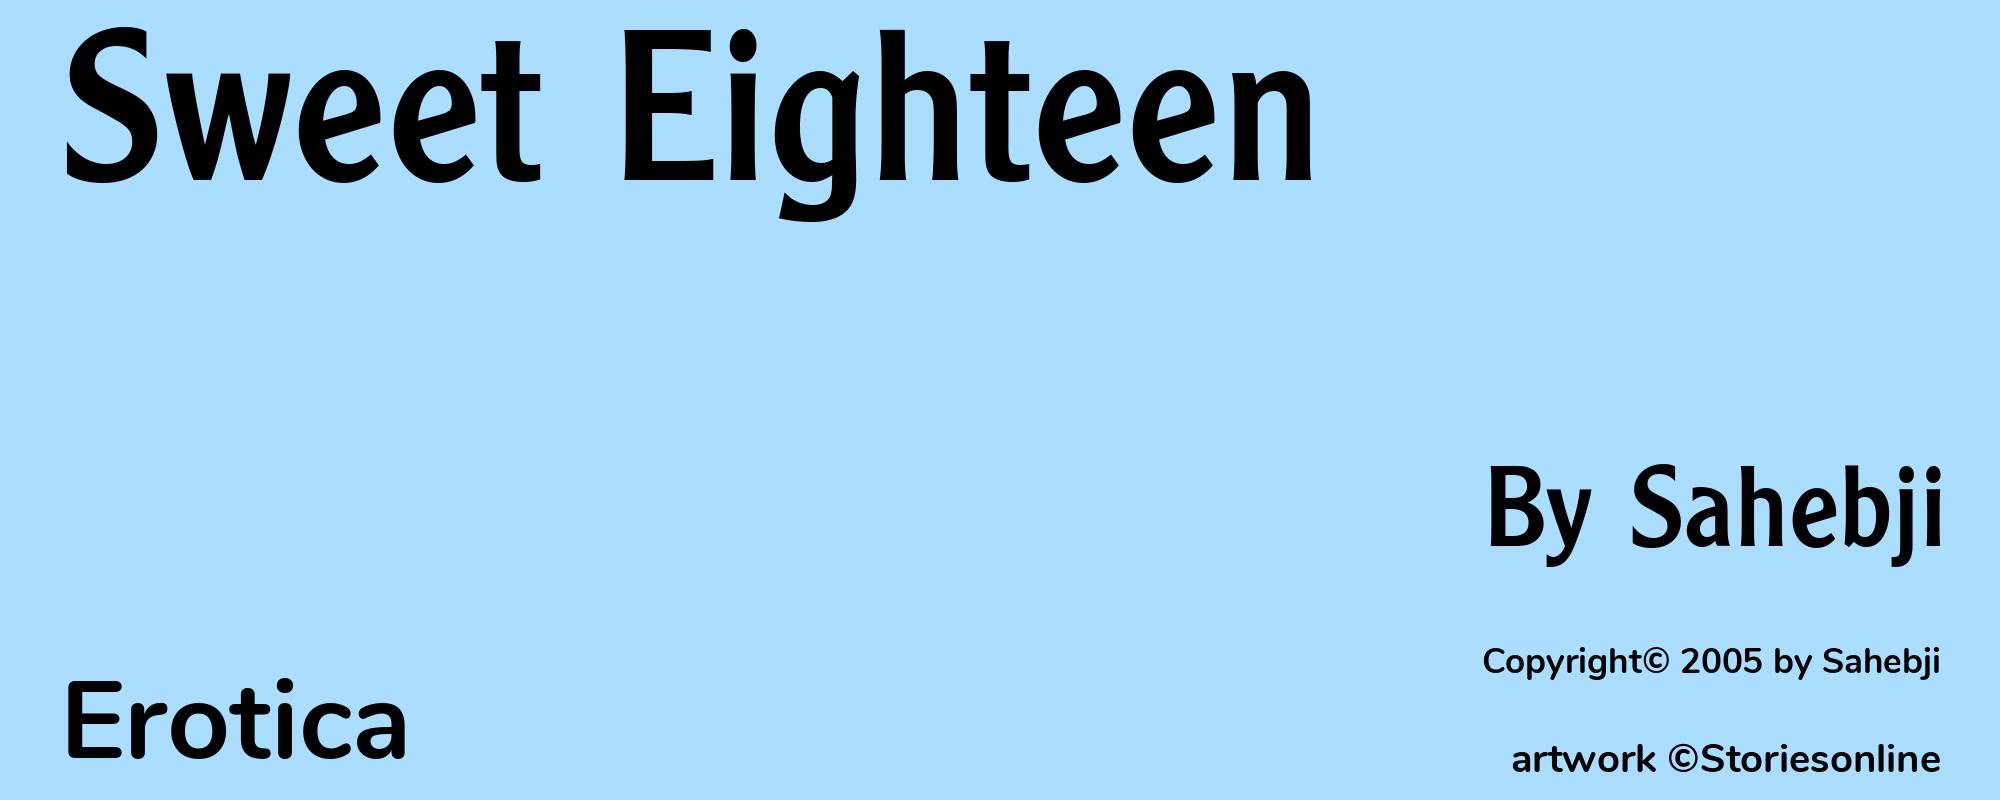 Sweet Eighteen - Cover